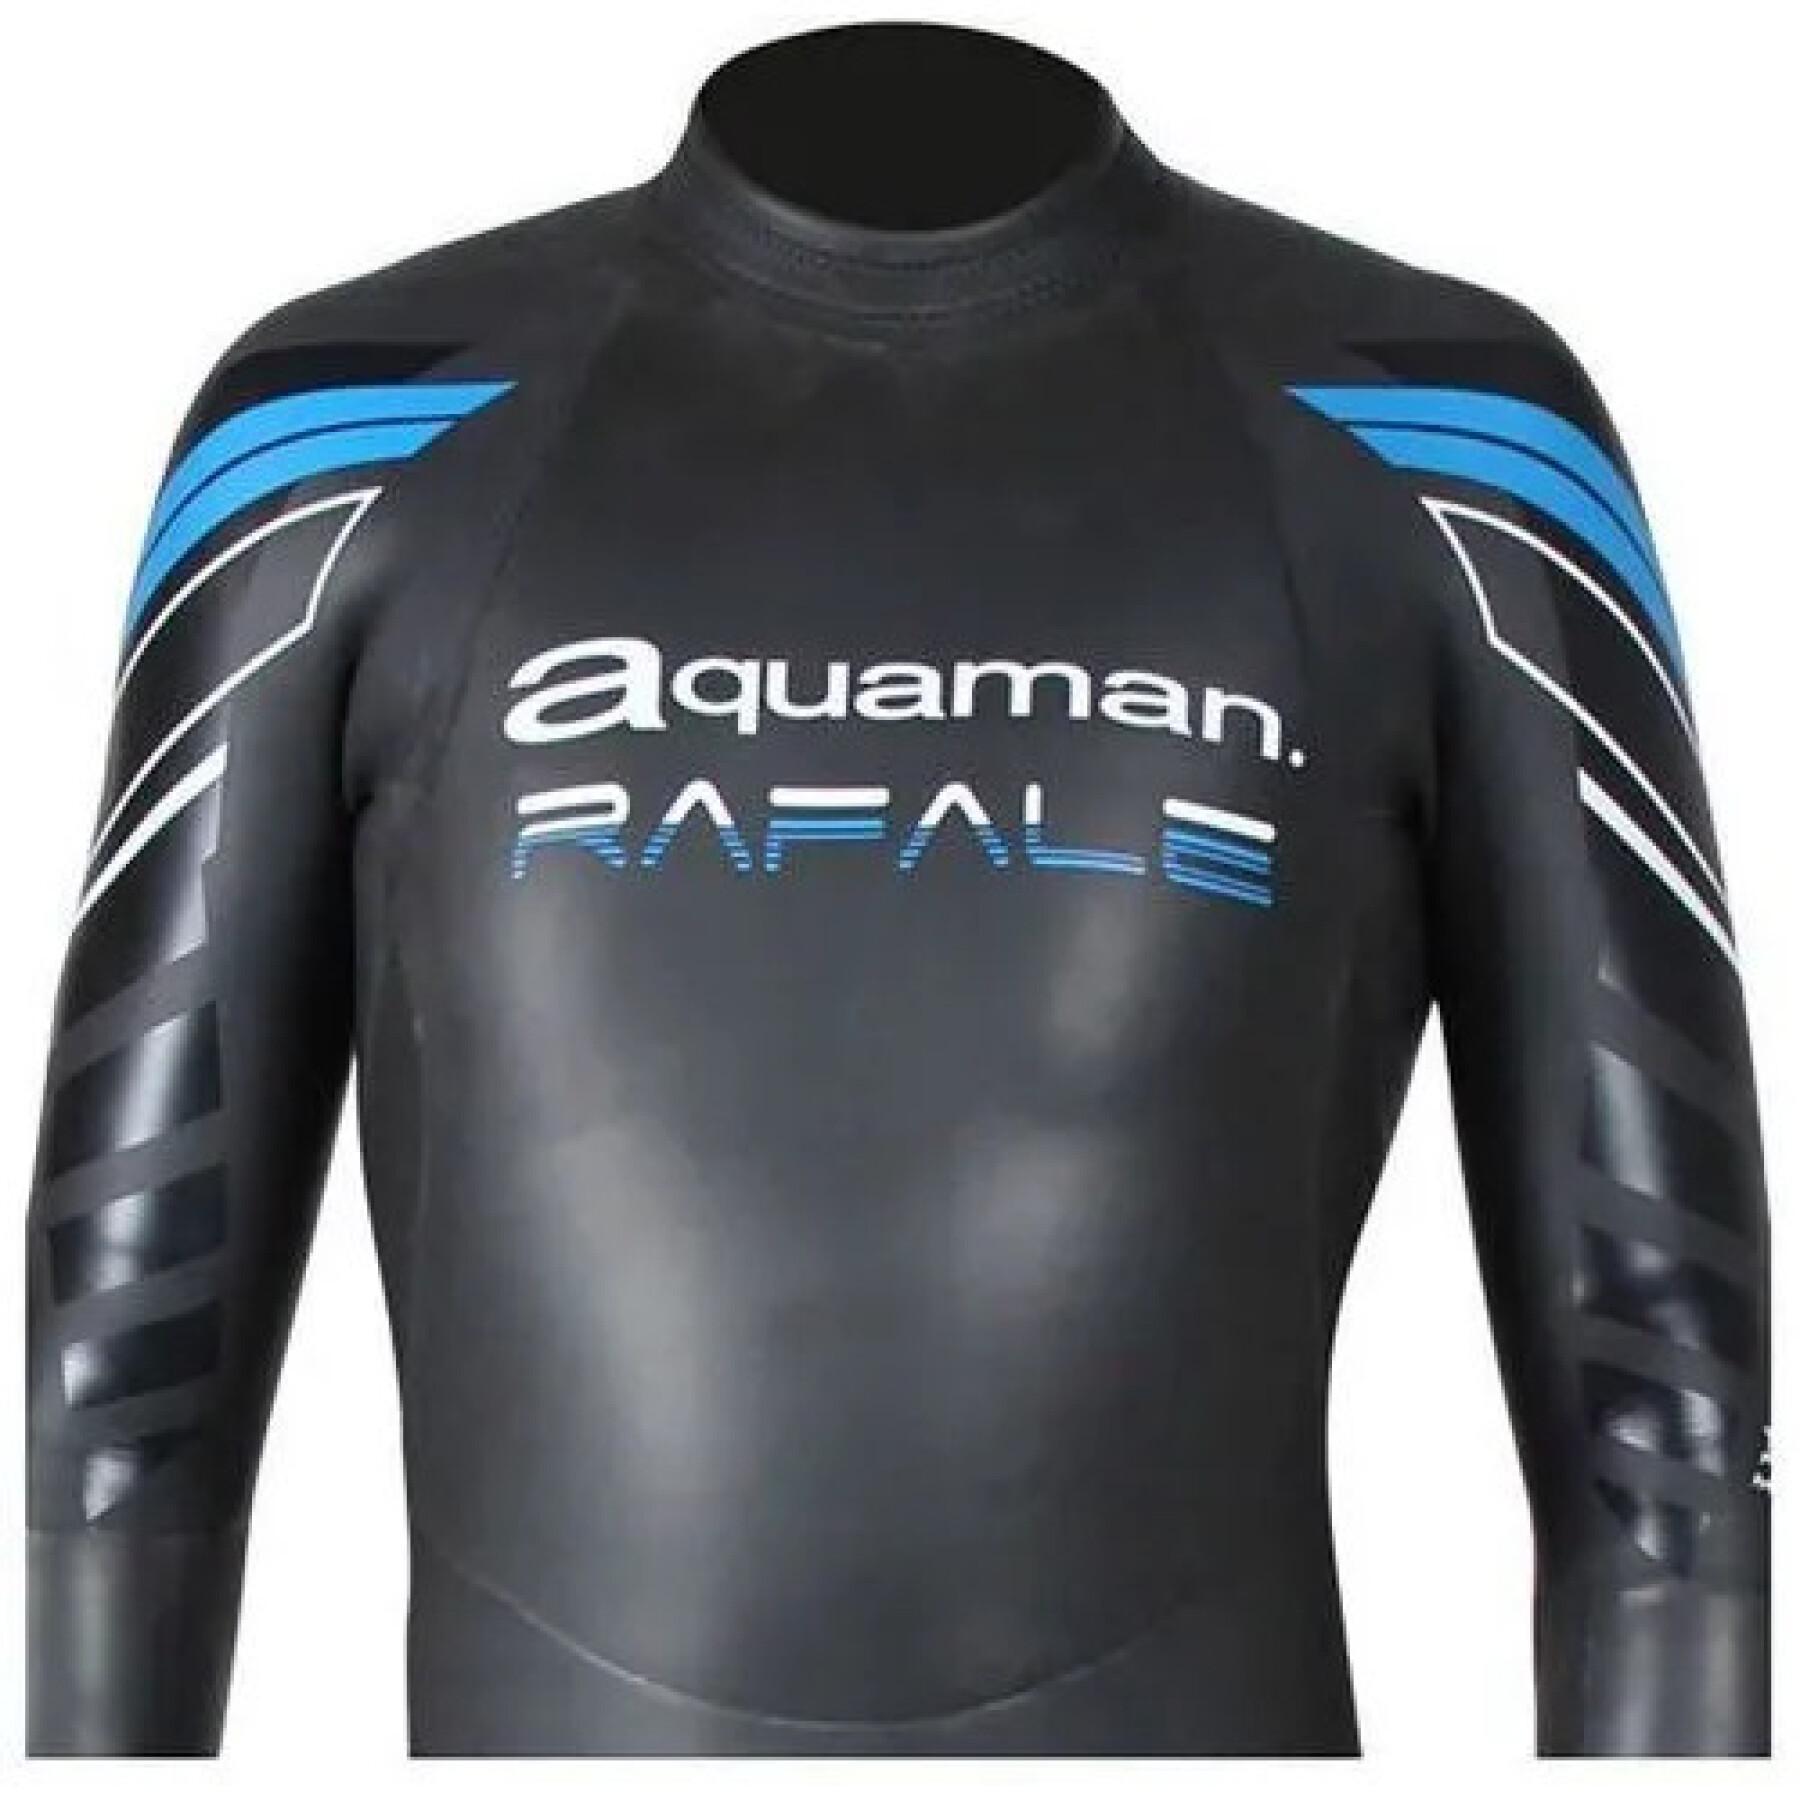 Triathlonanzug Aquaman RAFALE